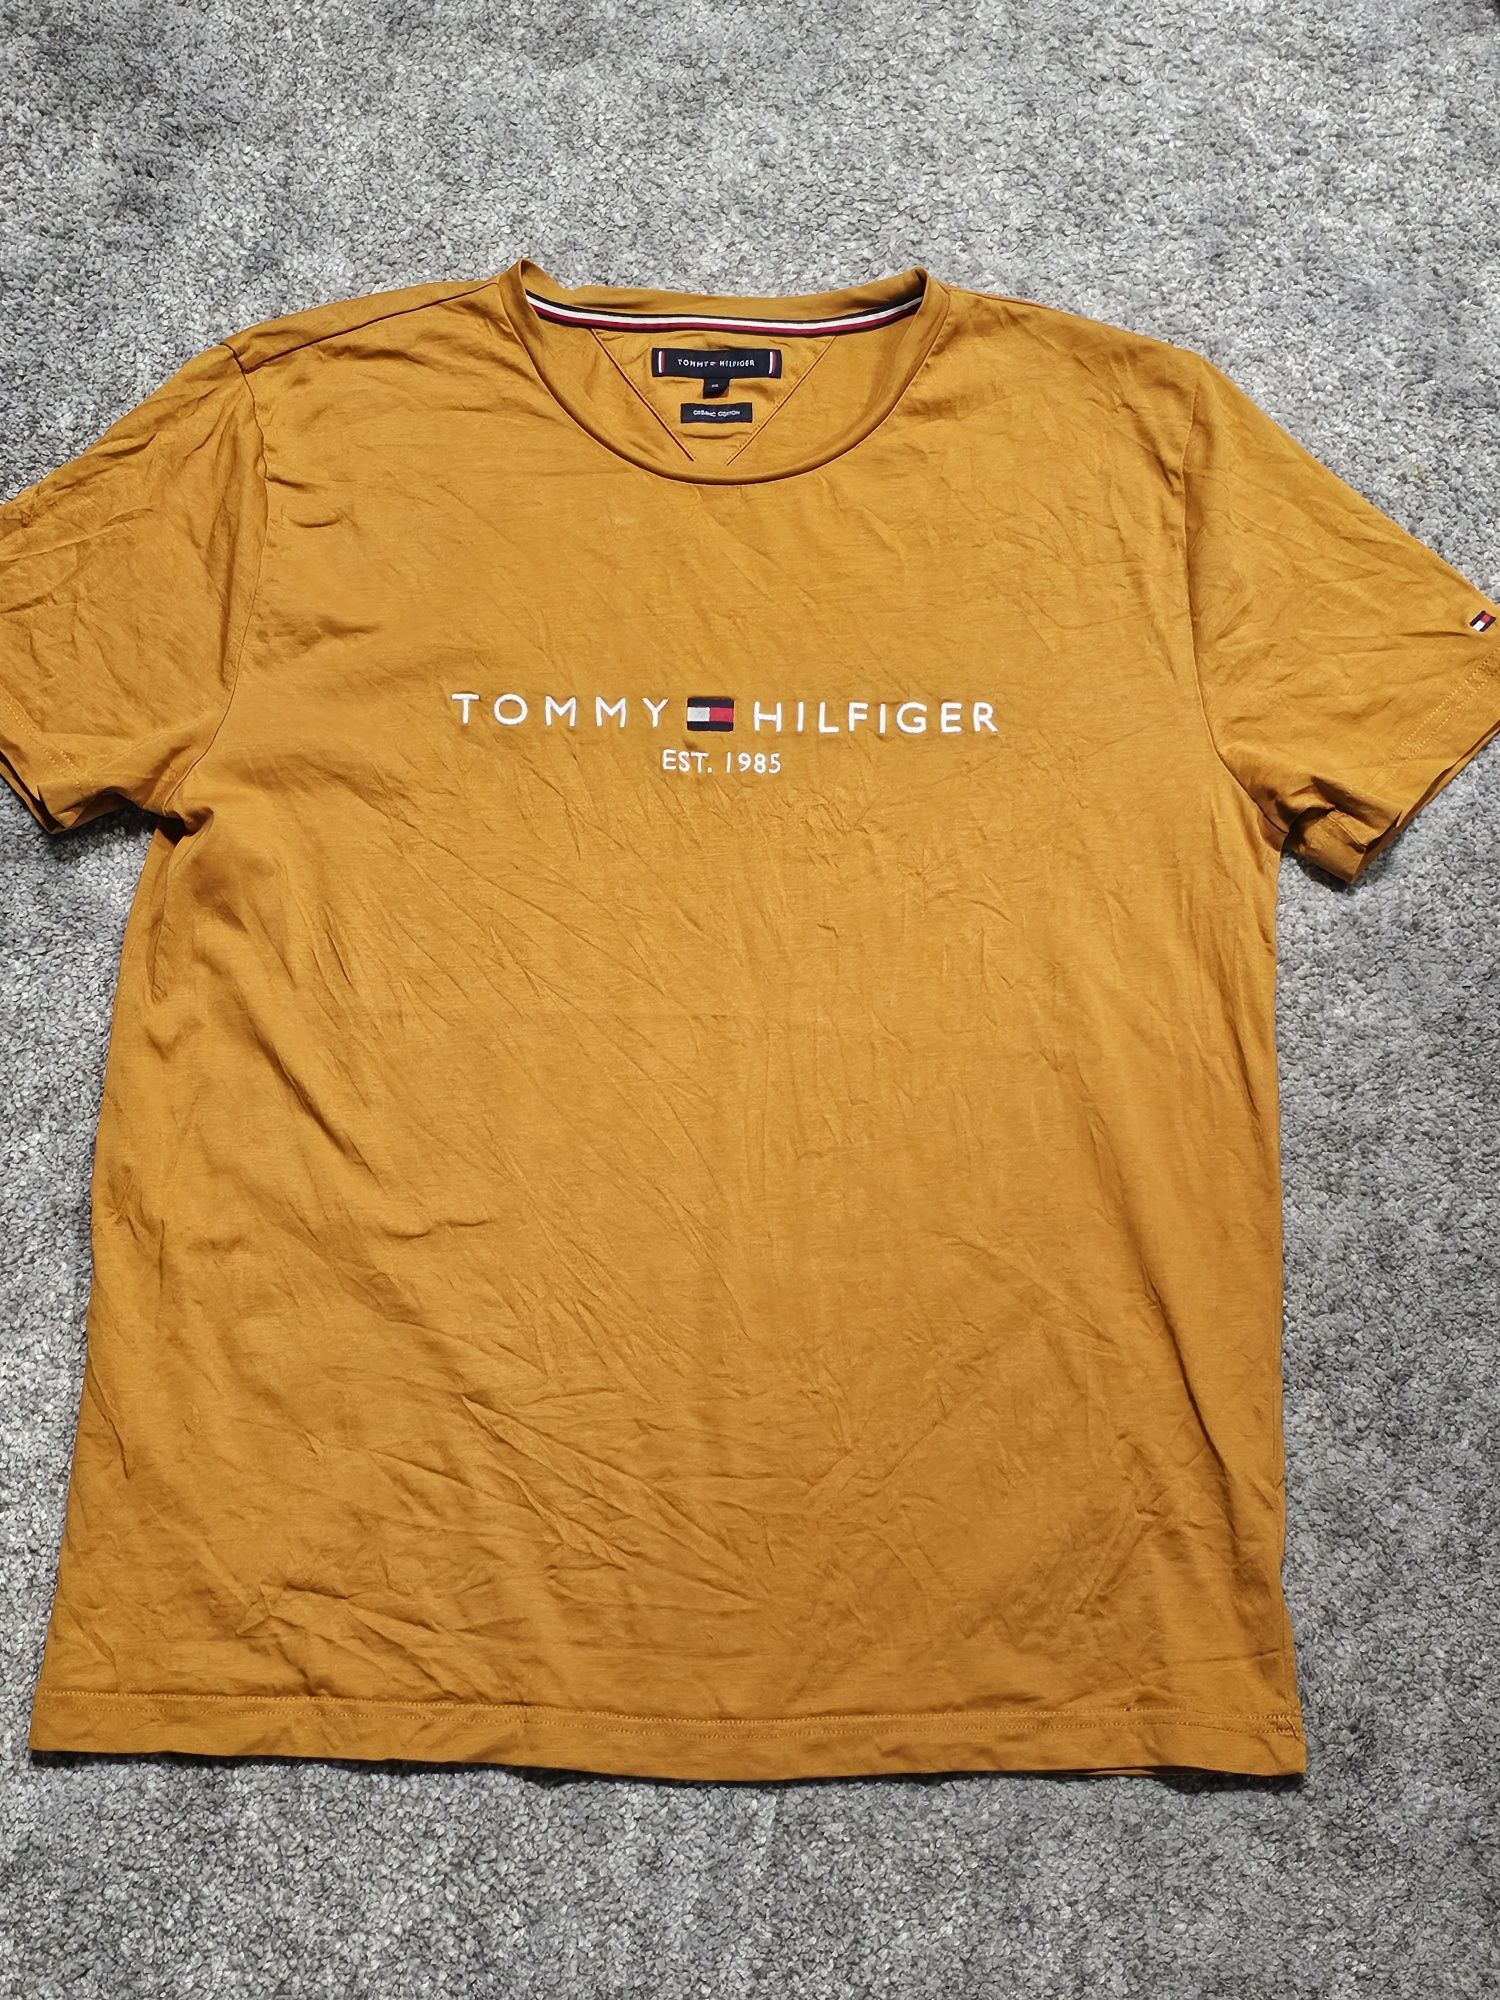 Tricou Tommy Hilfiger
Marime XL
Purtate de cateva ori
Se vinde pentru